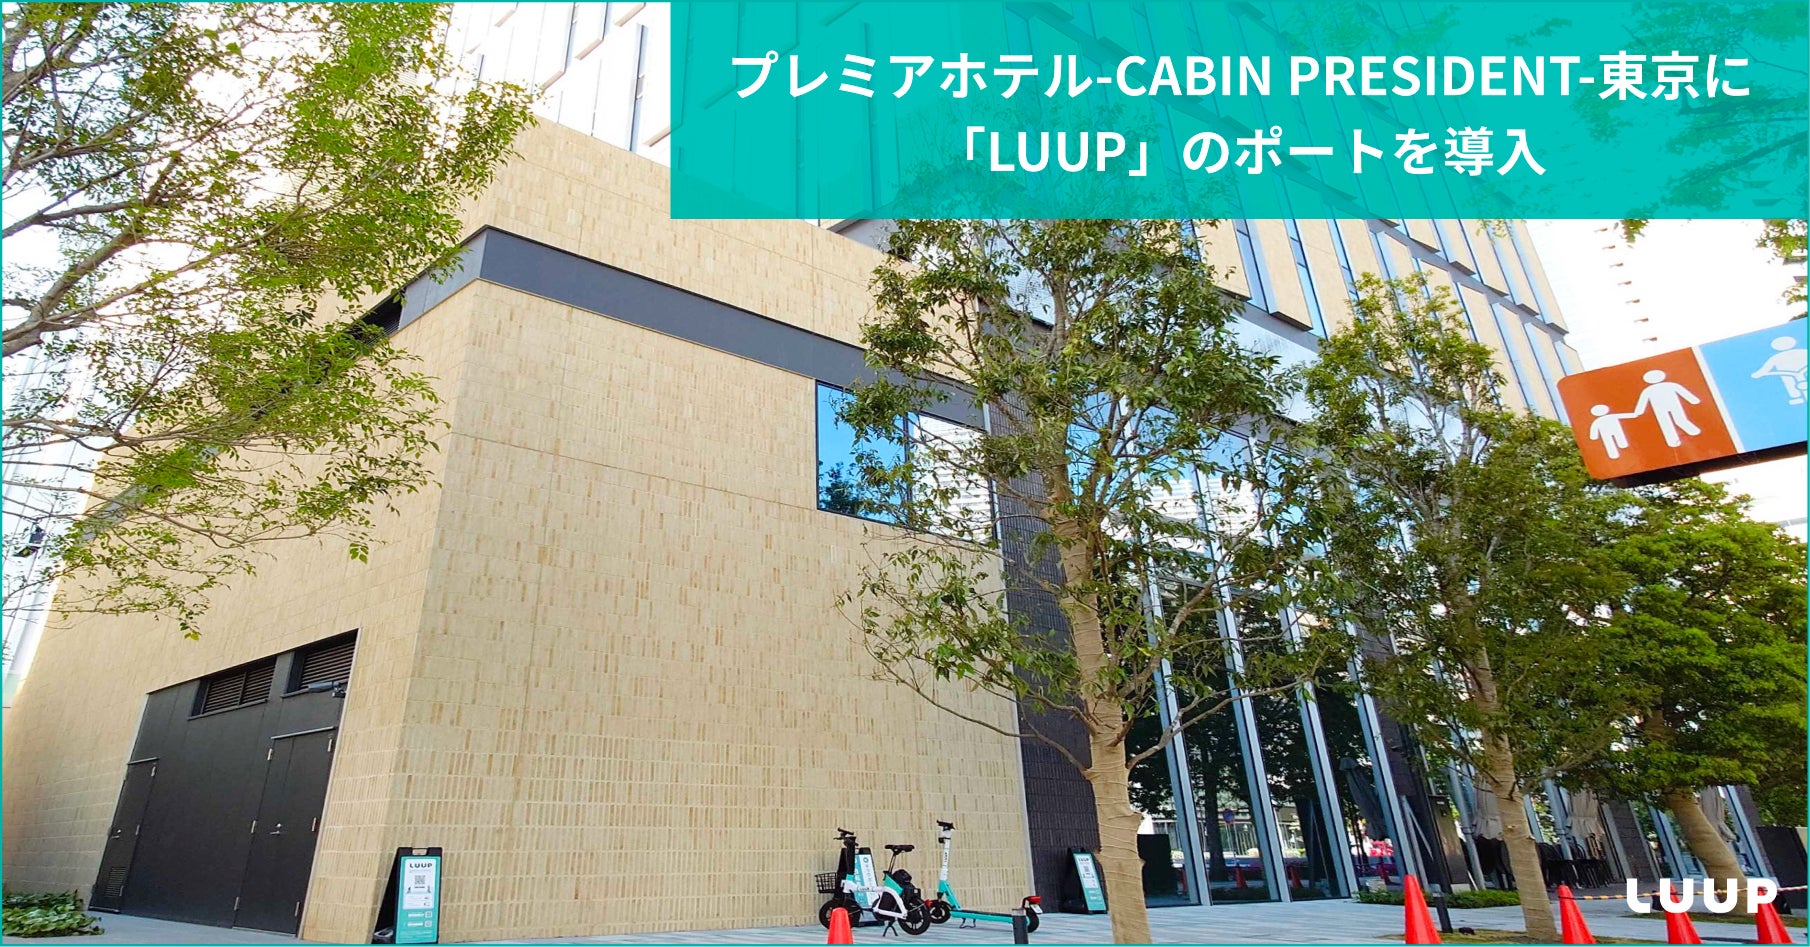 プレミアホテル-CABIN PRESIDENT-東京に「LUUP」のポートを導入